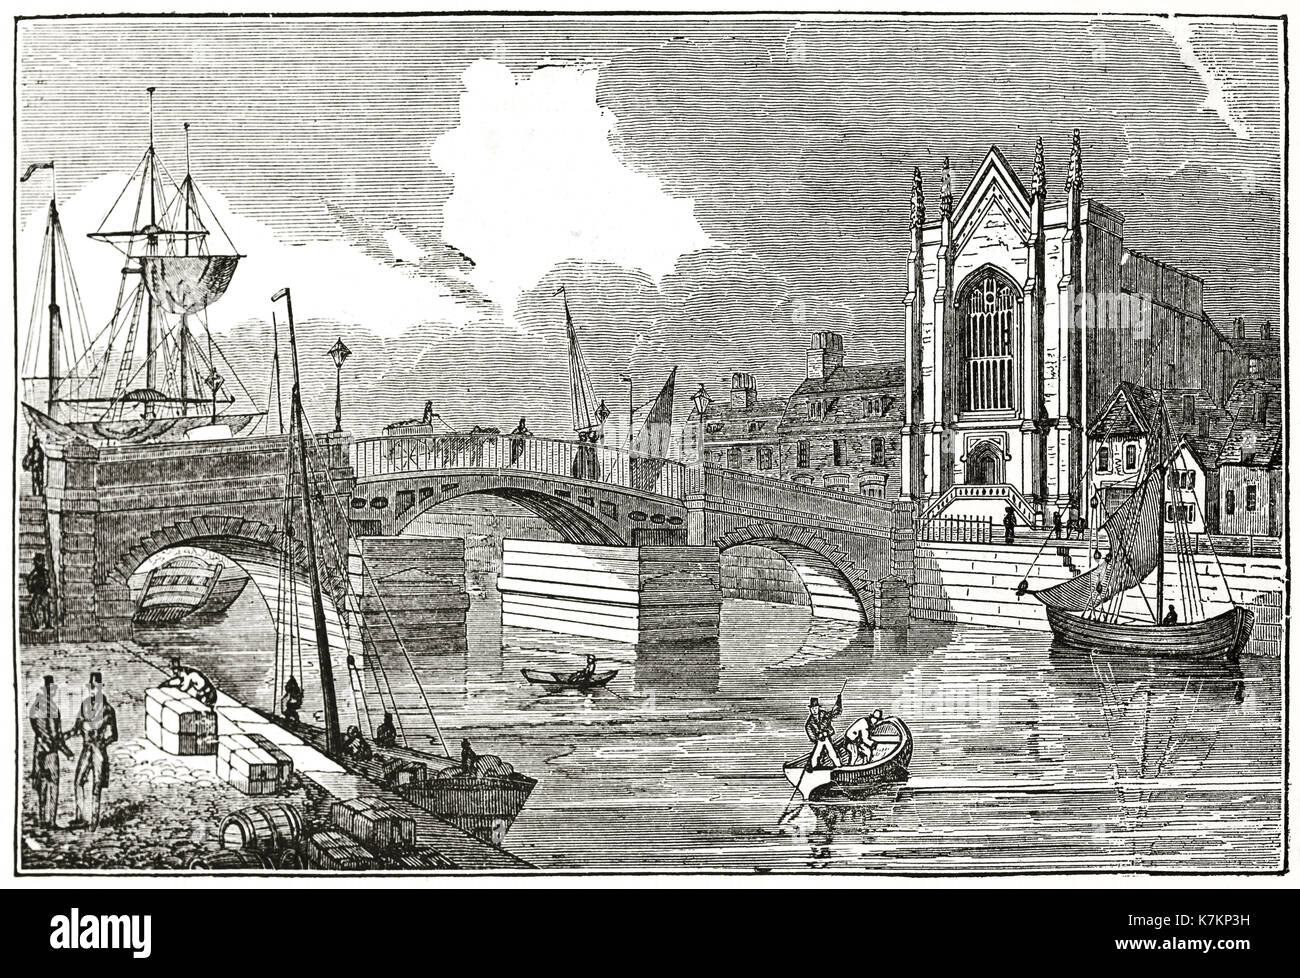 Vecchio vista del nuovo ponte e la chiesa della Santa Trinità, Weymouth, Regno Unito. Da autore non identificato, publ. su Penny Magazine, London, 1837 Foto Stock